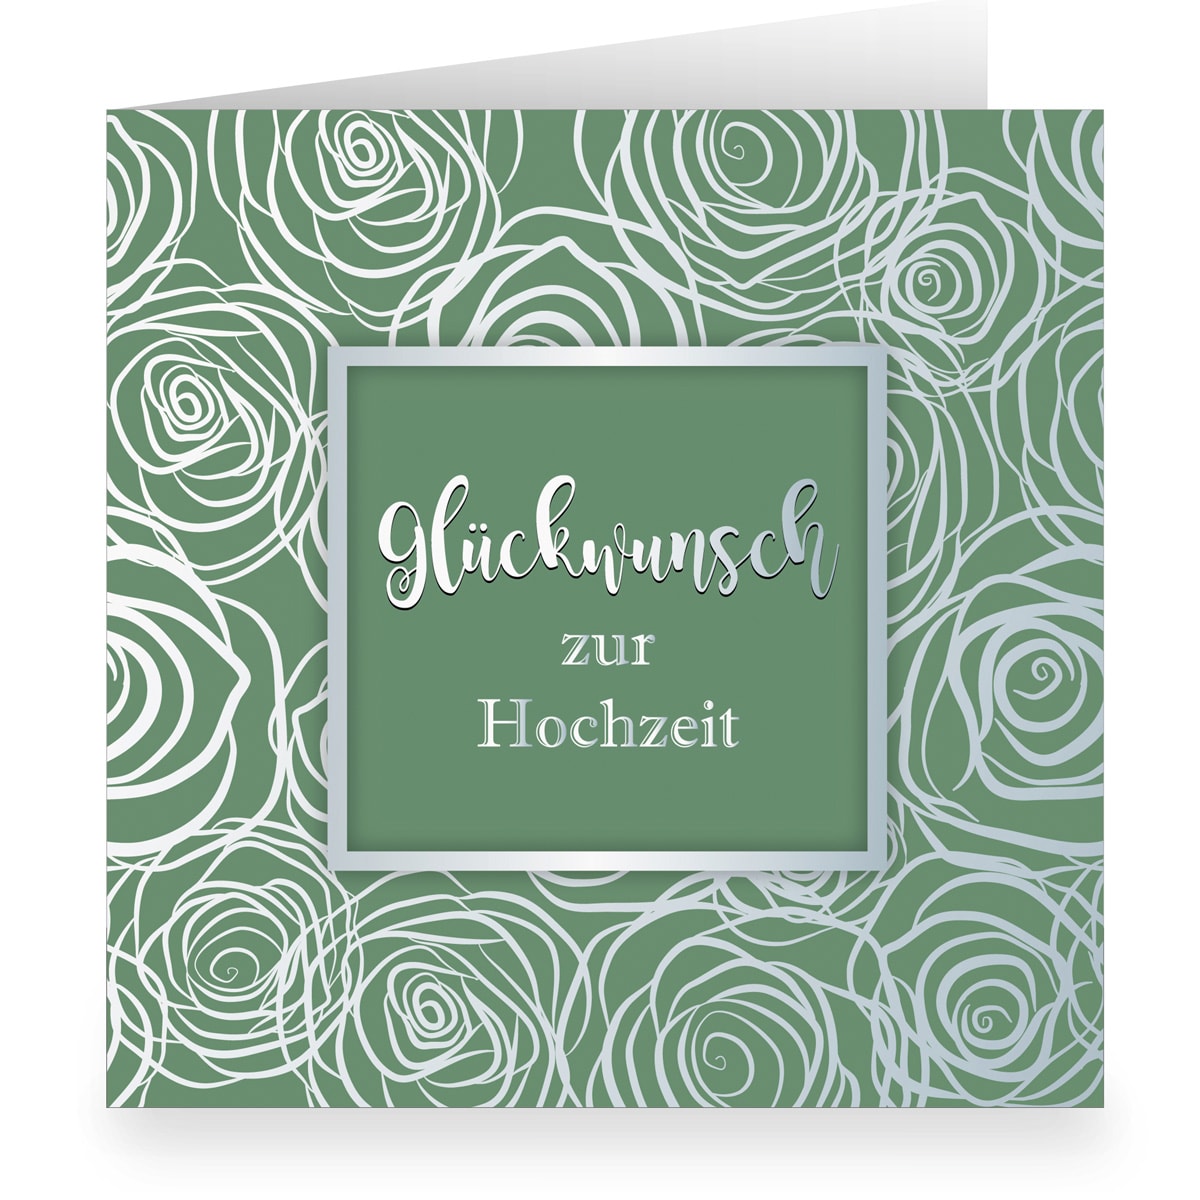 Kartenkaufrausch: Grüne Hochzeitskarte mit Rosen aus unserer Hochzeits Papeterie in grün